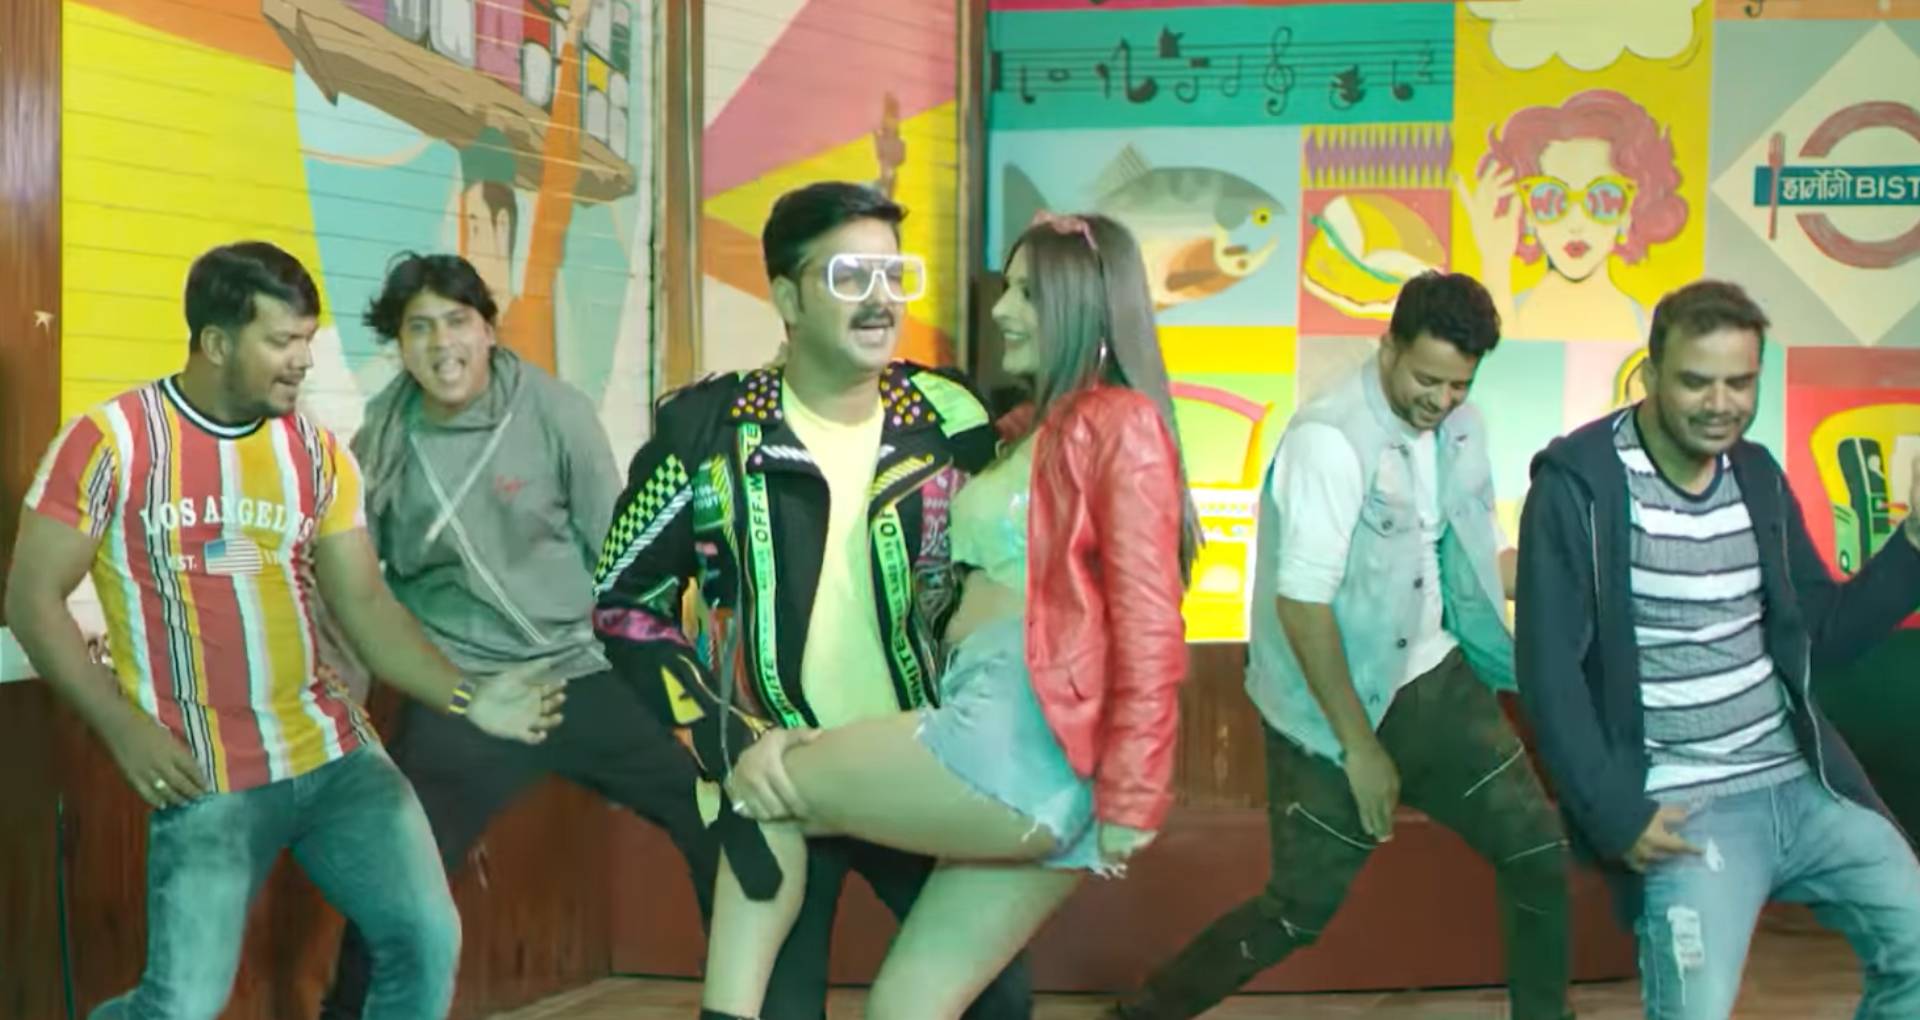 पवन सिंह का पहला भोजपुरी पॉप सॉन्ग लॉन्च, हमार वाला डांस पर नाचता दिखा इंडिया, देखिए ये धांसू गाना